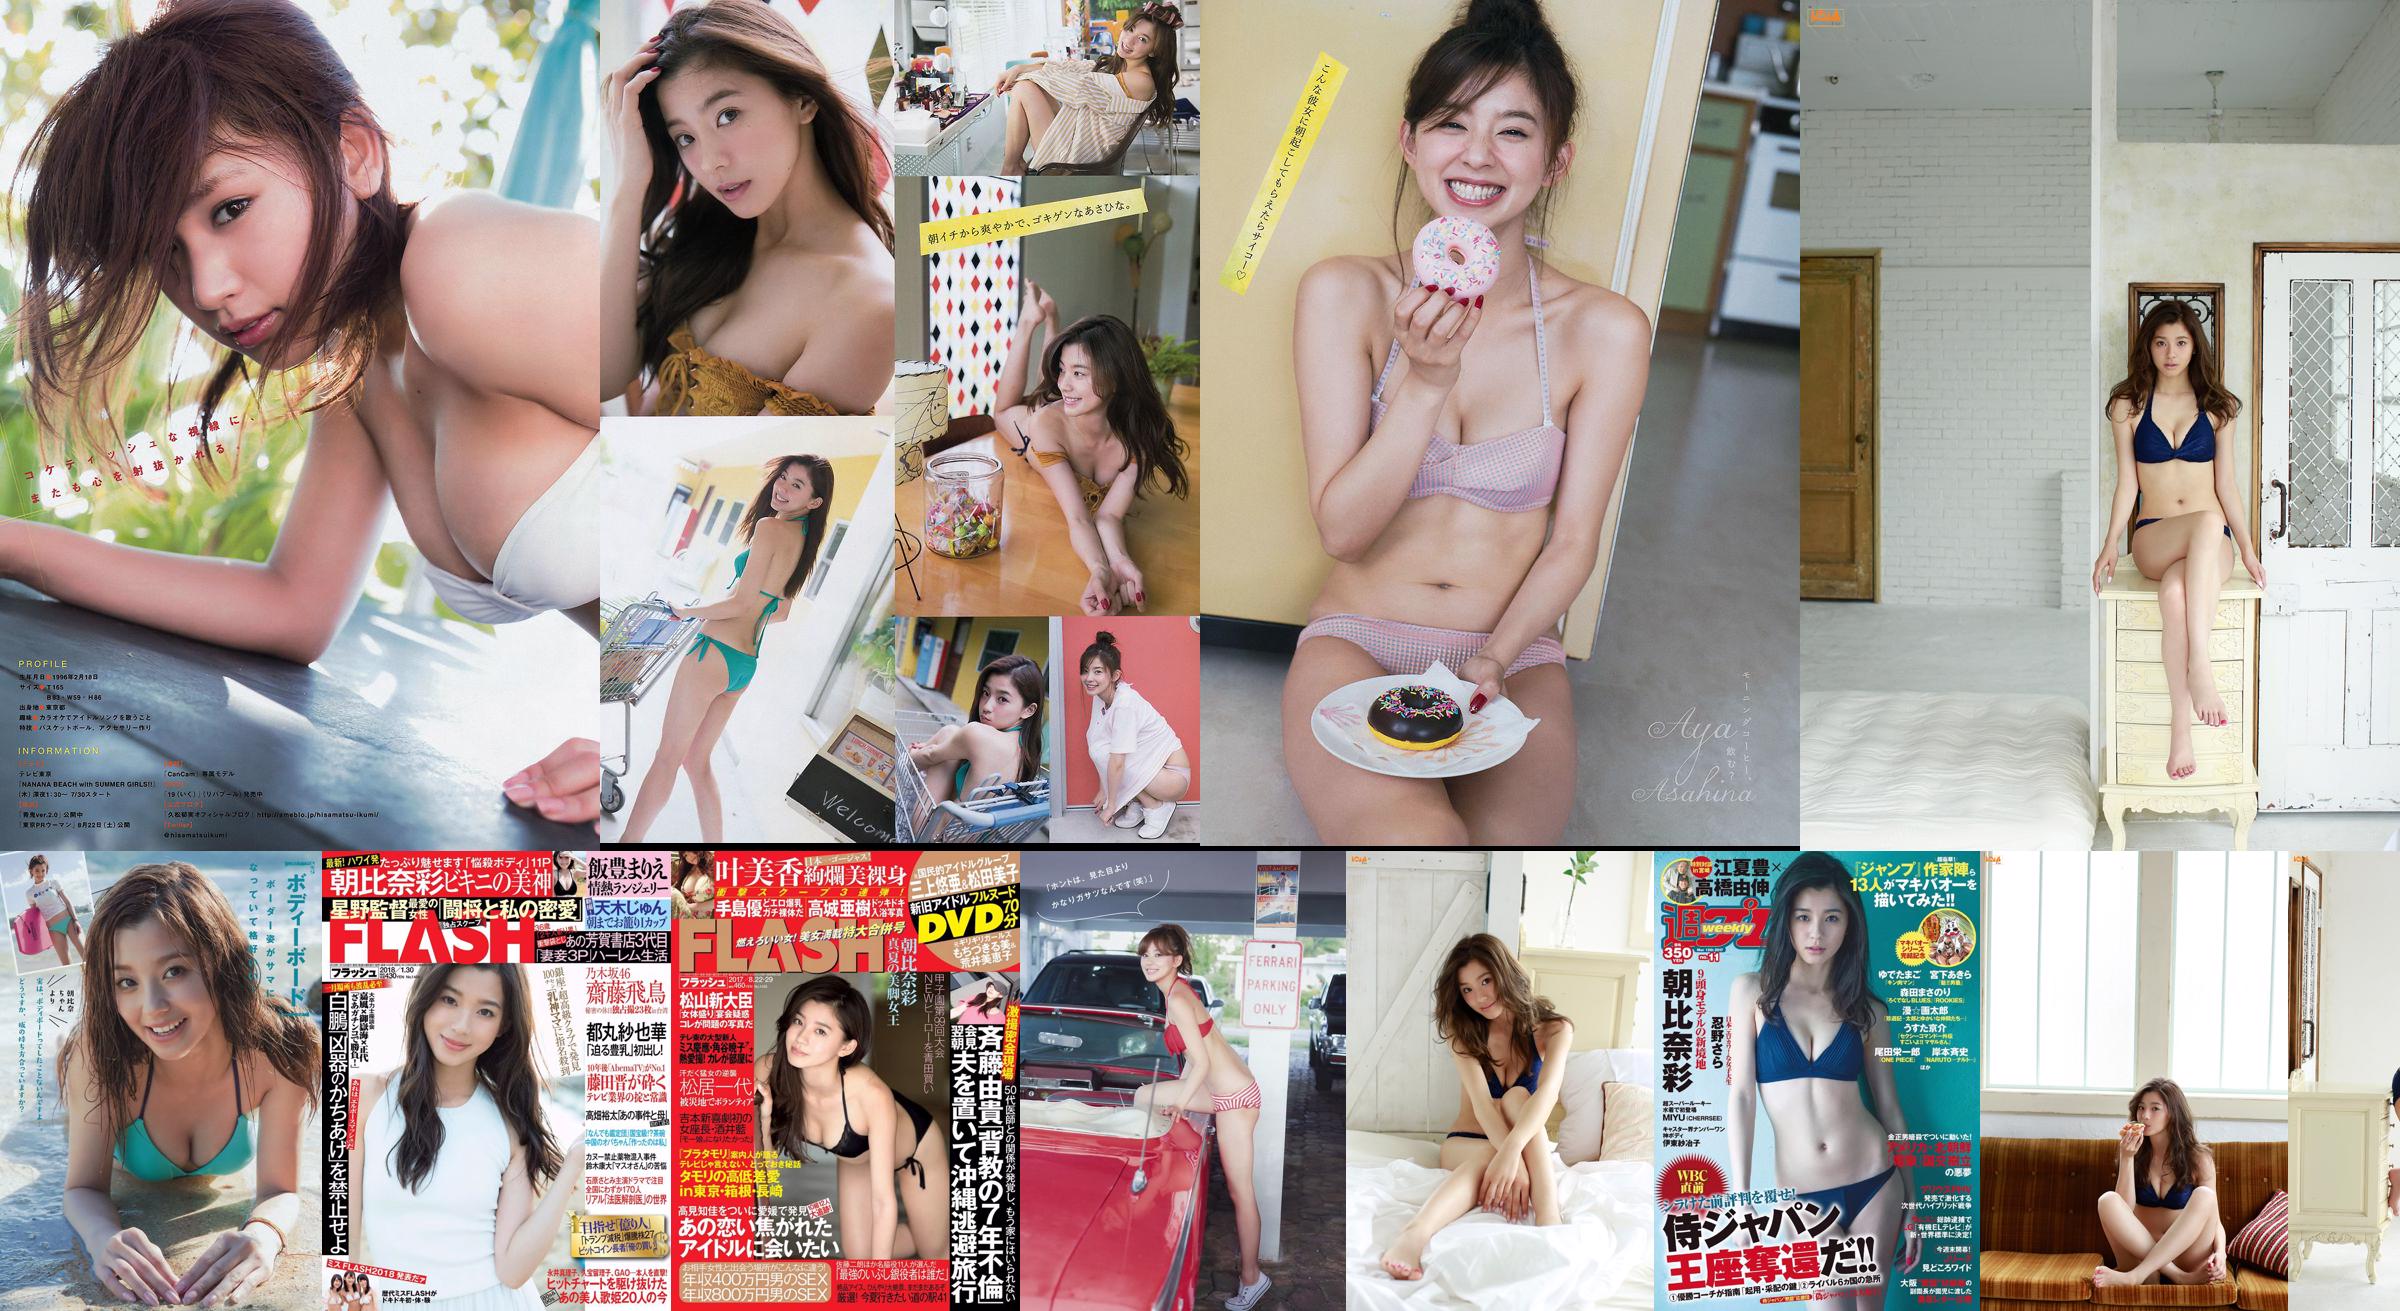 Asahina Nasa Nemoto Nagi Kumae Ryuyuki Hoshina Mitsuki Hatsukagawa Minami [Weekly Playboy] 2016 No.22 Photo Magazine No.295a2b Pagina 1